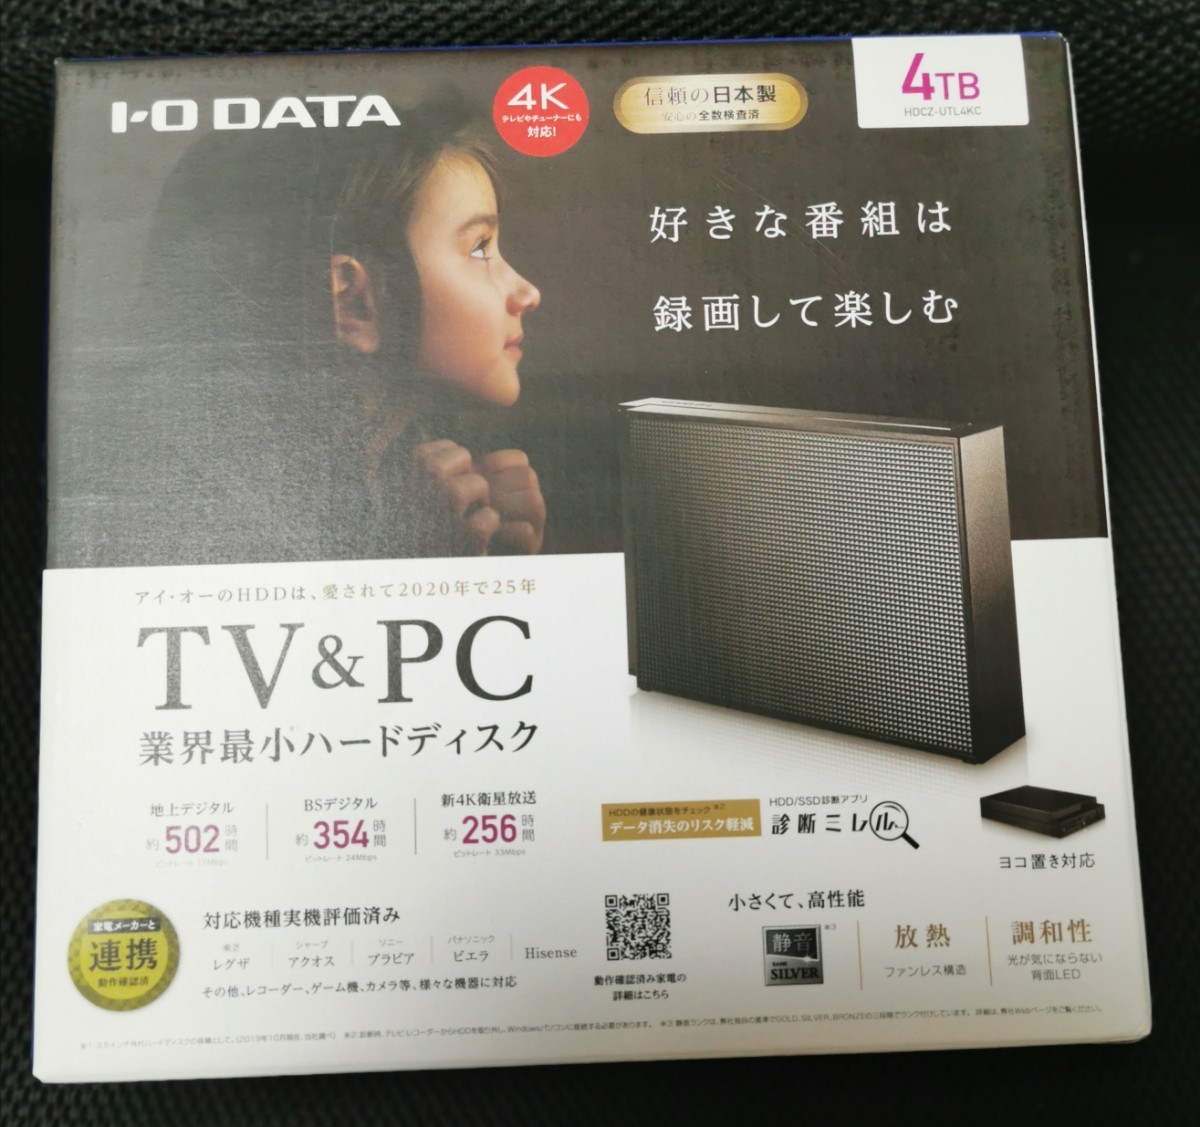 新品未開封品 4TB   外付けHDD  外付けハードディスク  IODATA